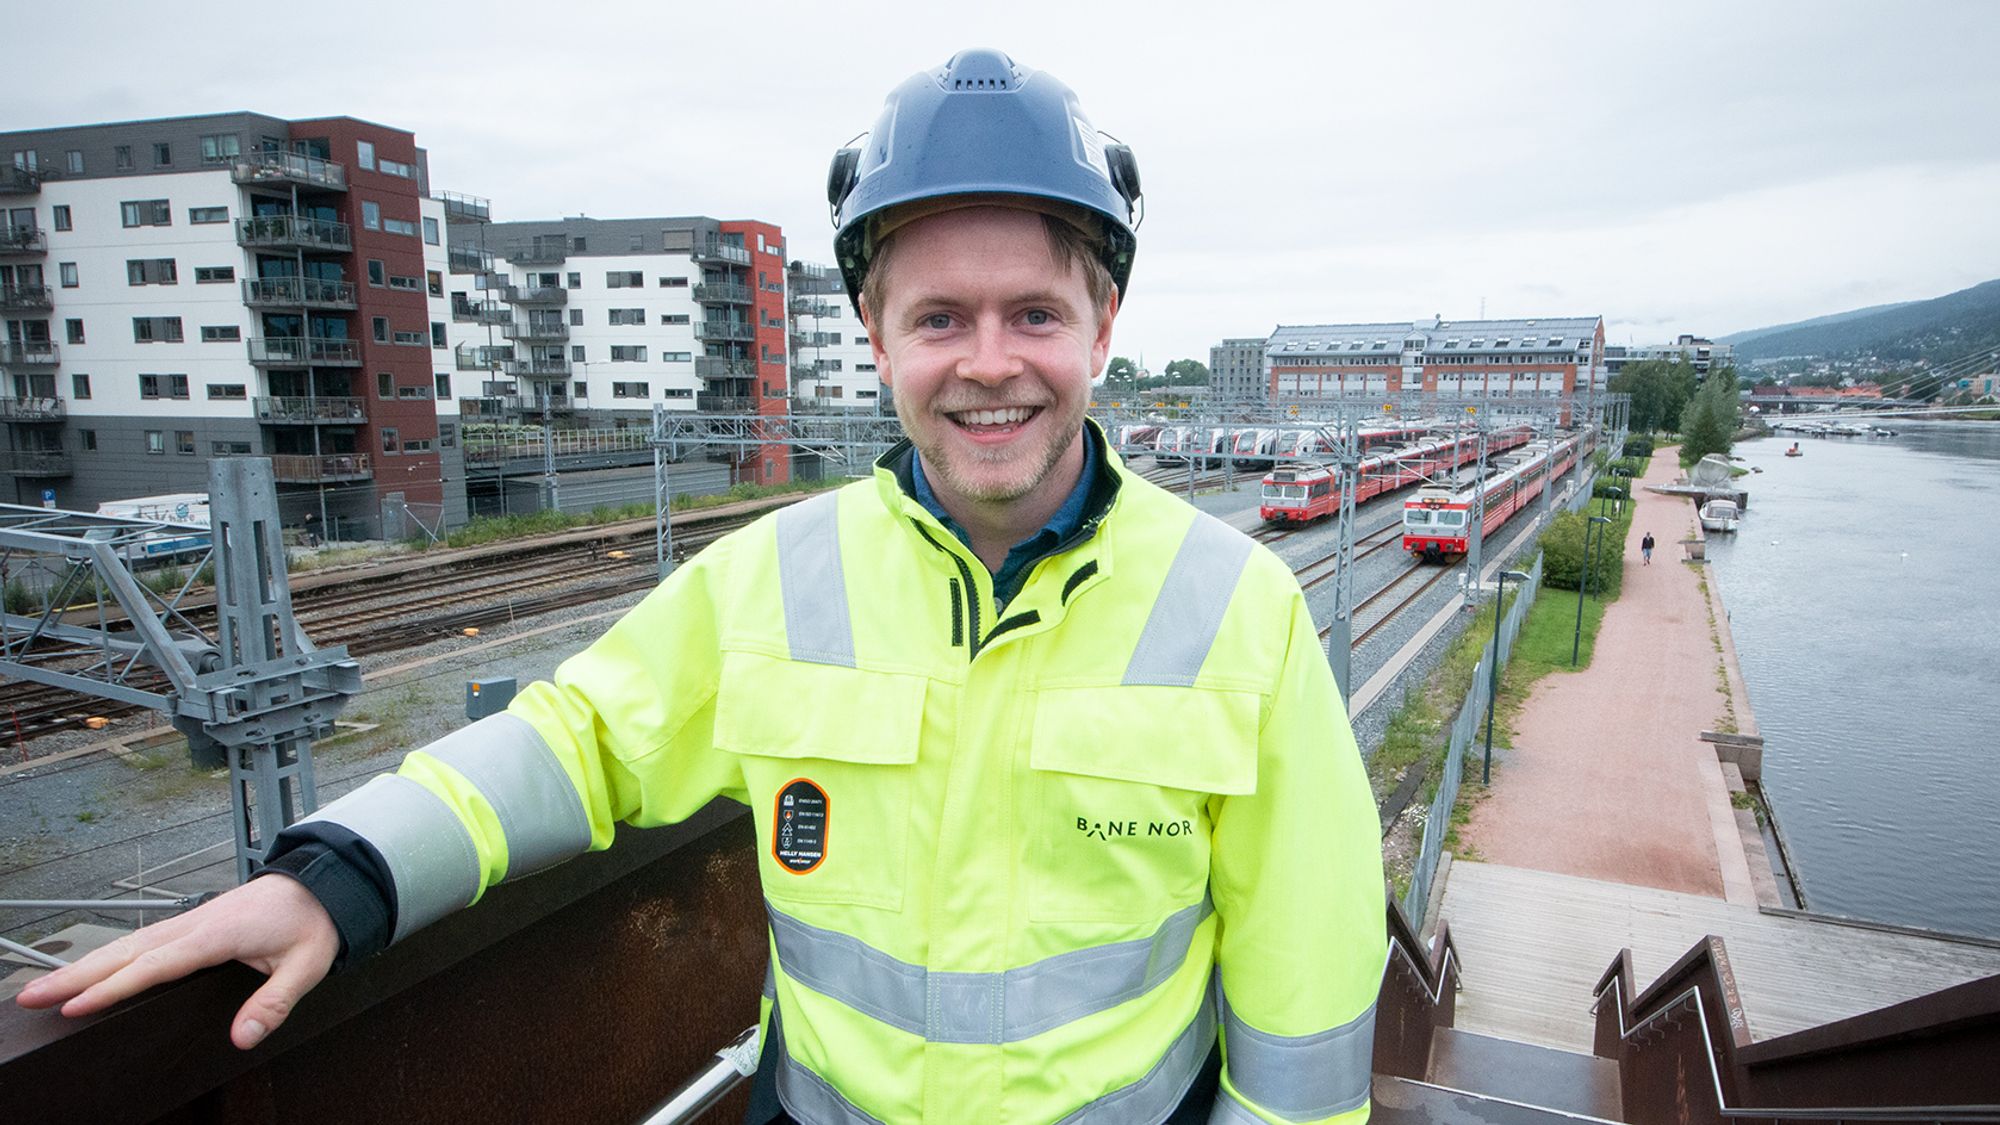 ANNONSE: Som trainee i Bane NOR er Øyvind assisterende prosjekteringsleder på et av landets største jernbaneprosjekter